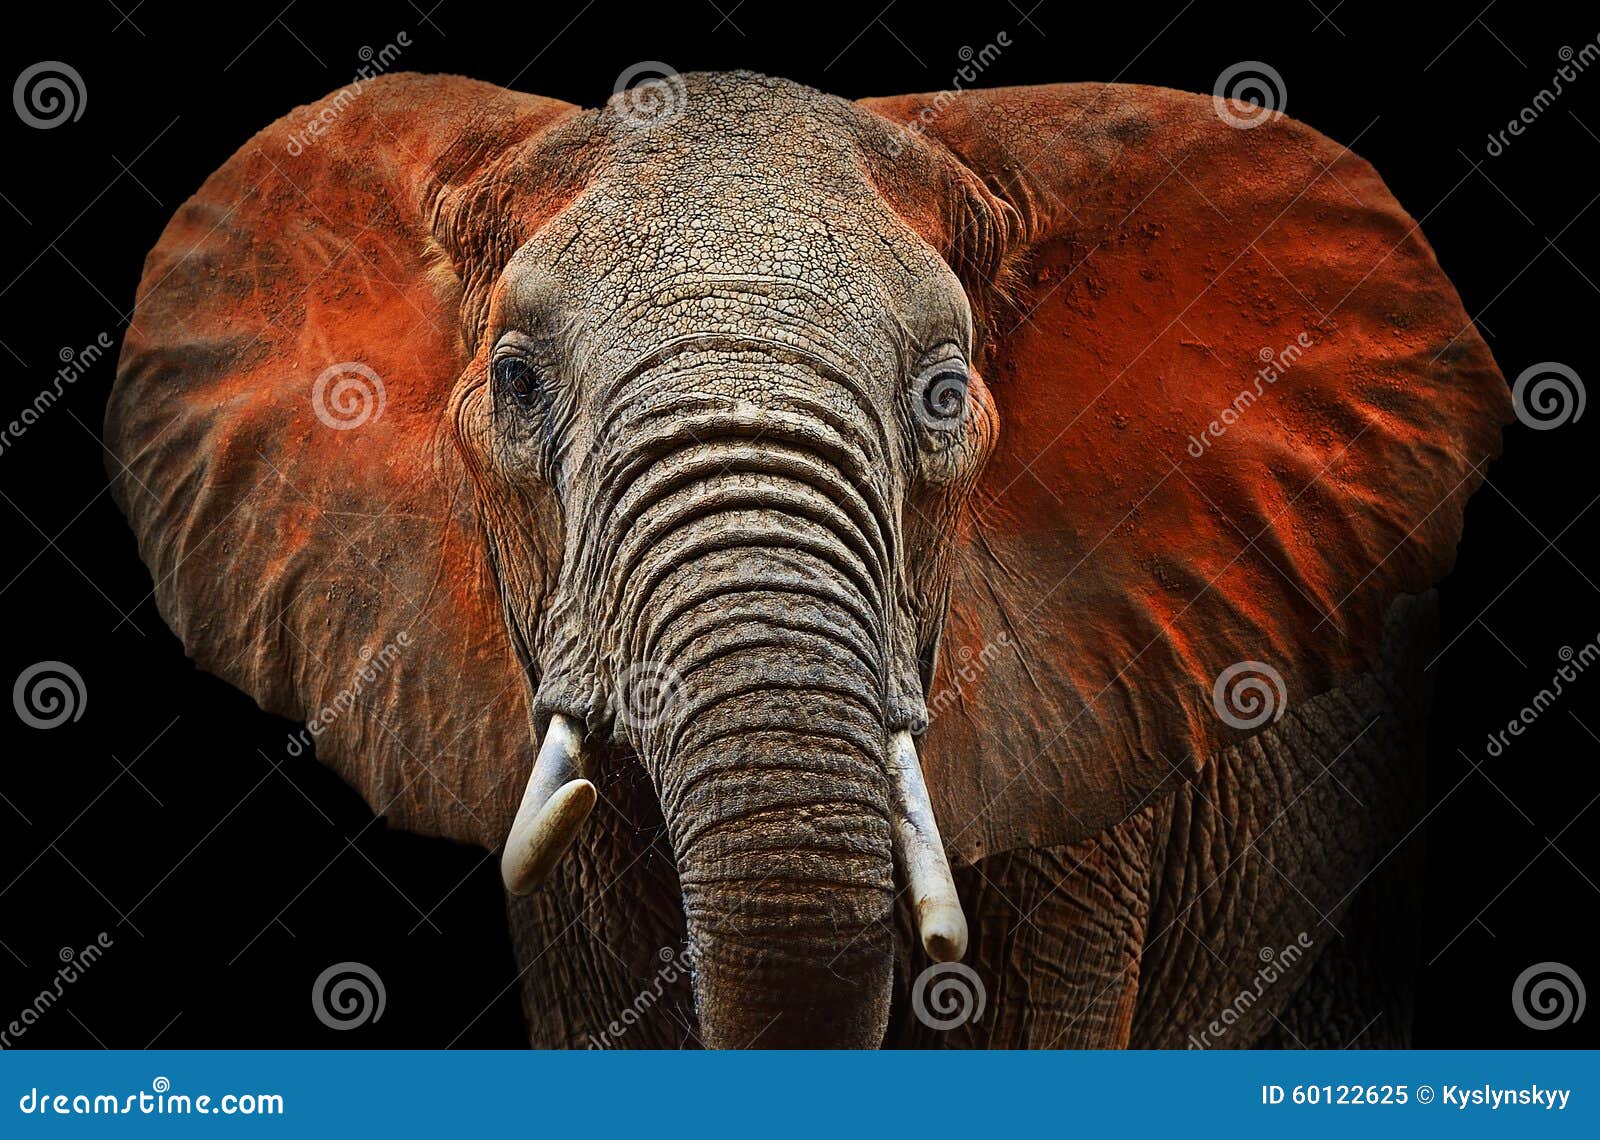 elephants of tsavo